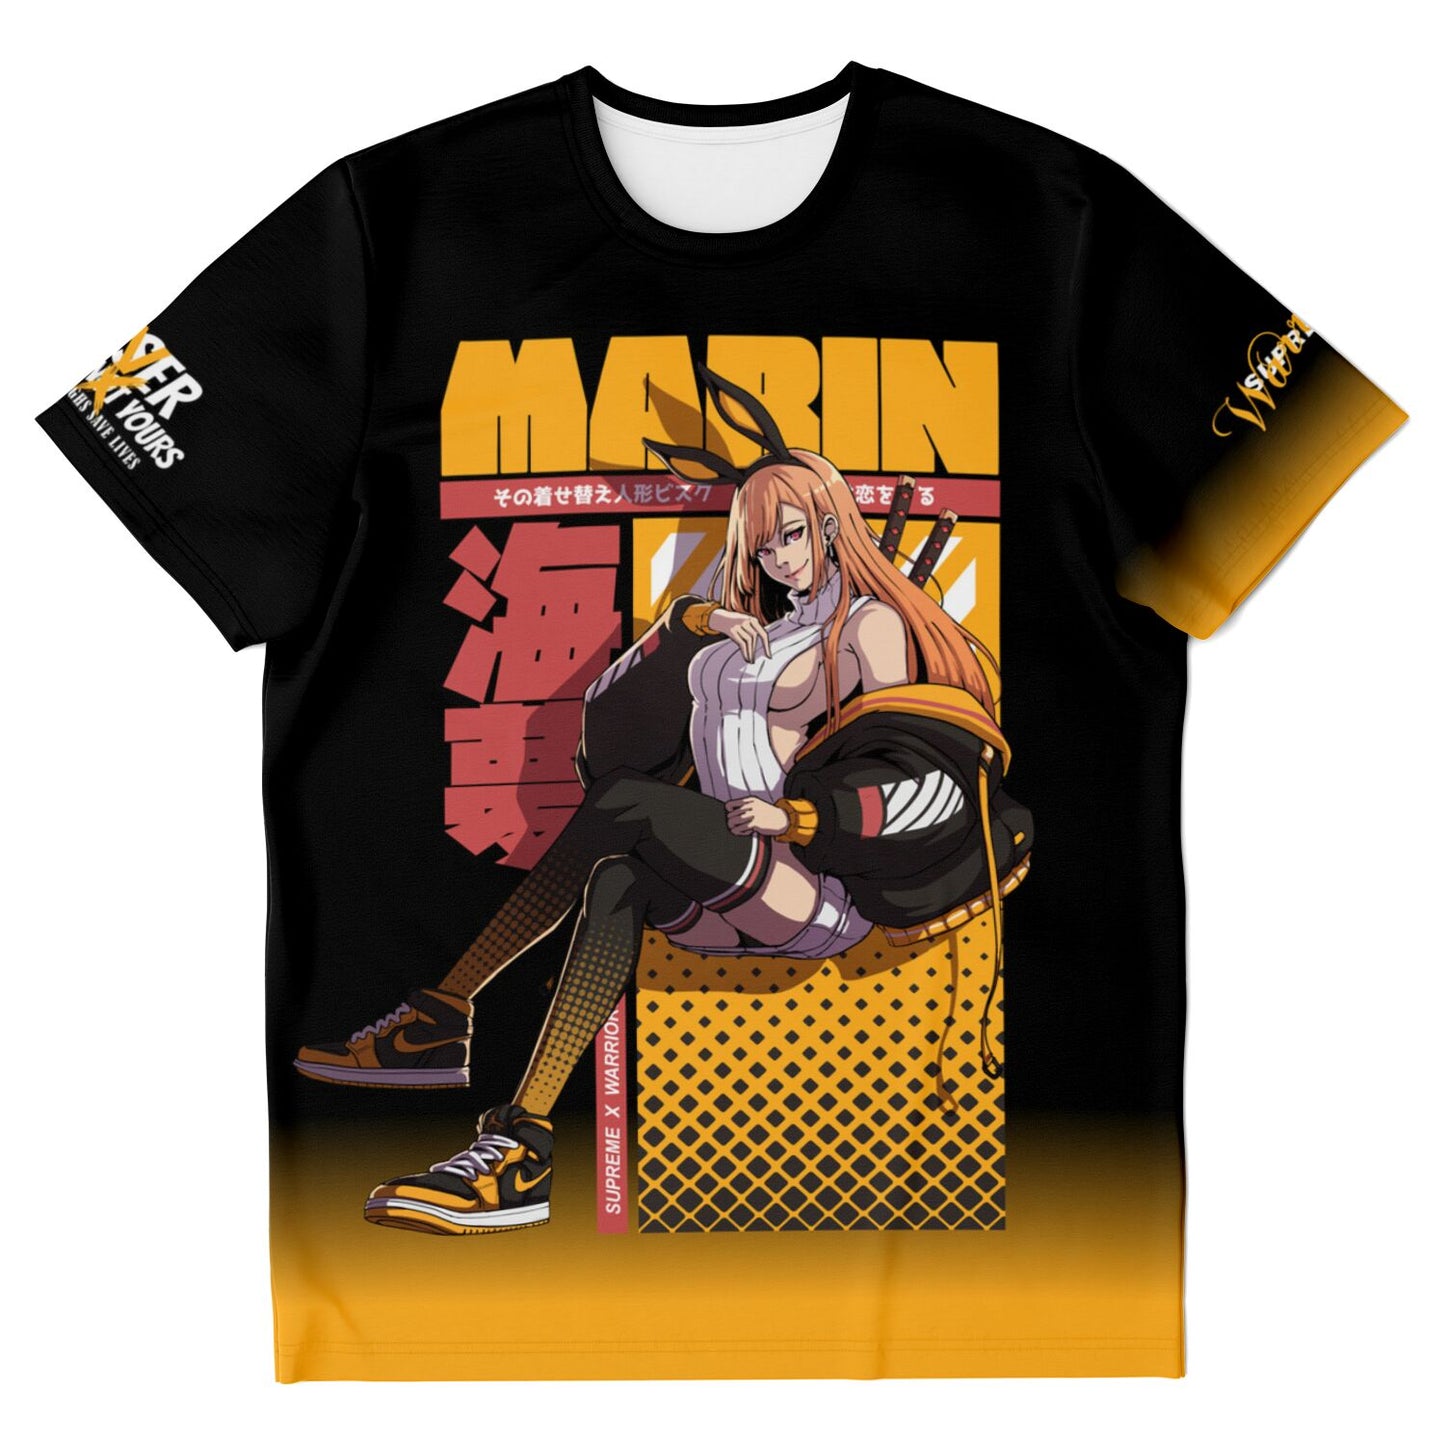 Marin T-shirt